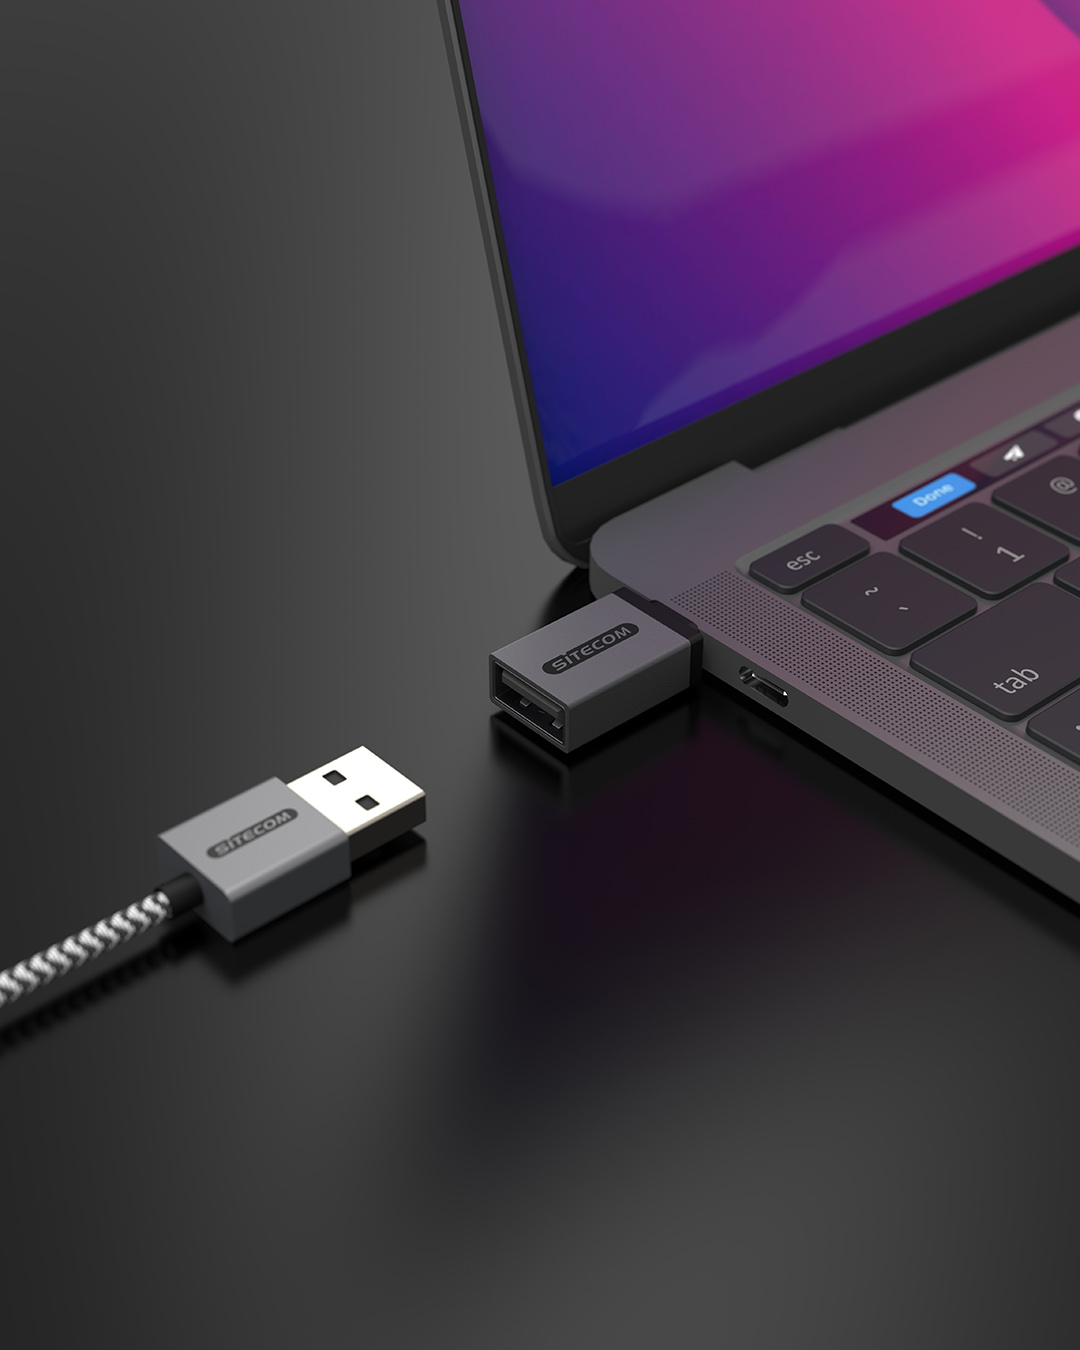 Sitecom - USB-C to USB-A mini adapter - AD-1010